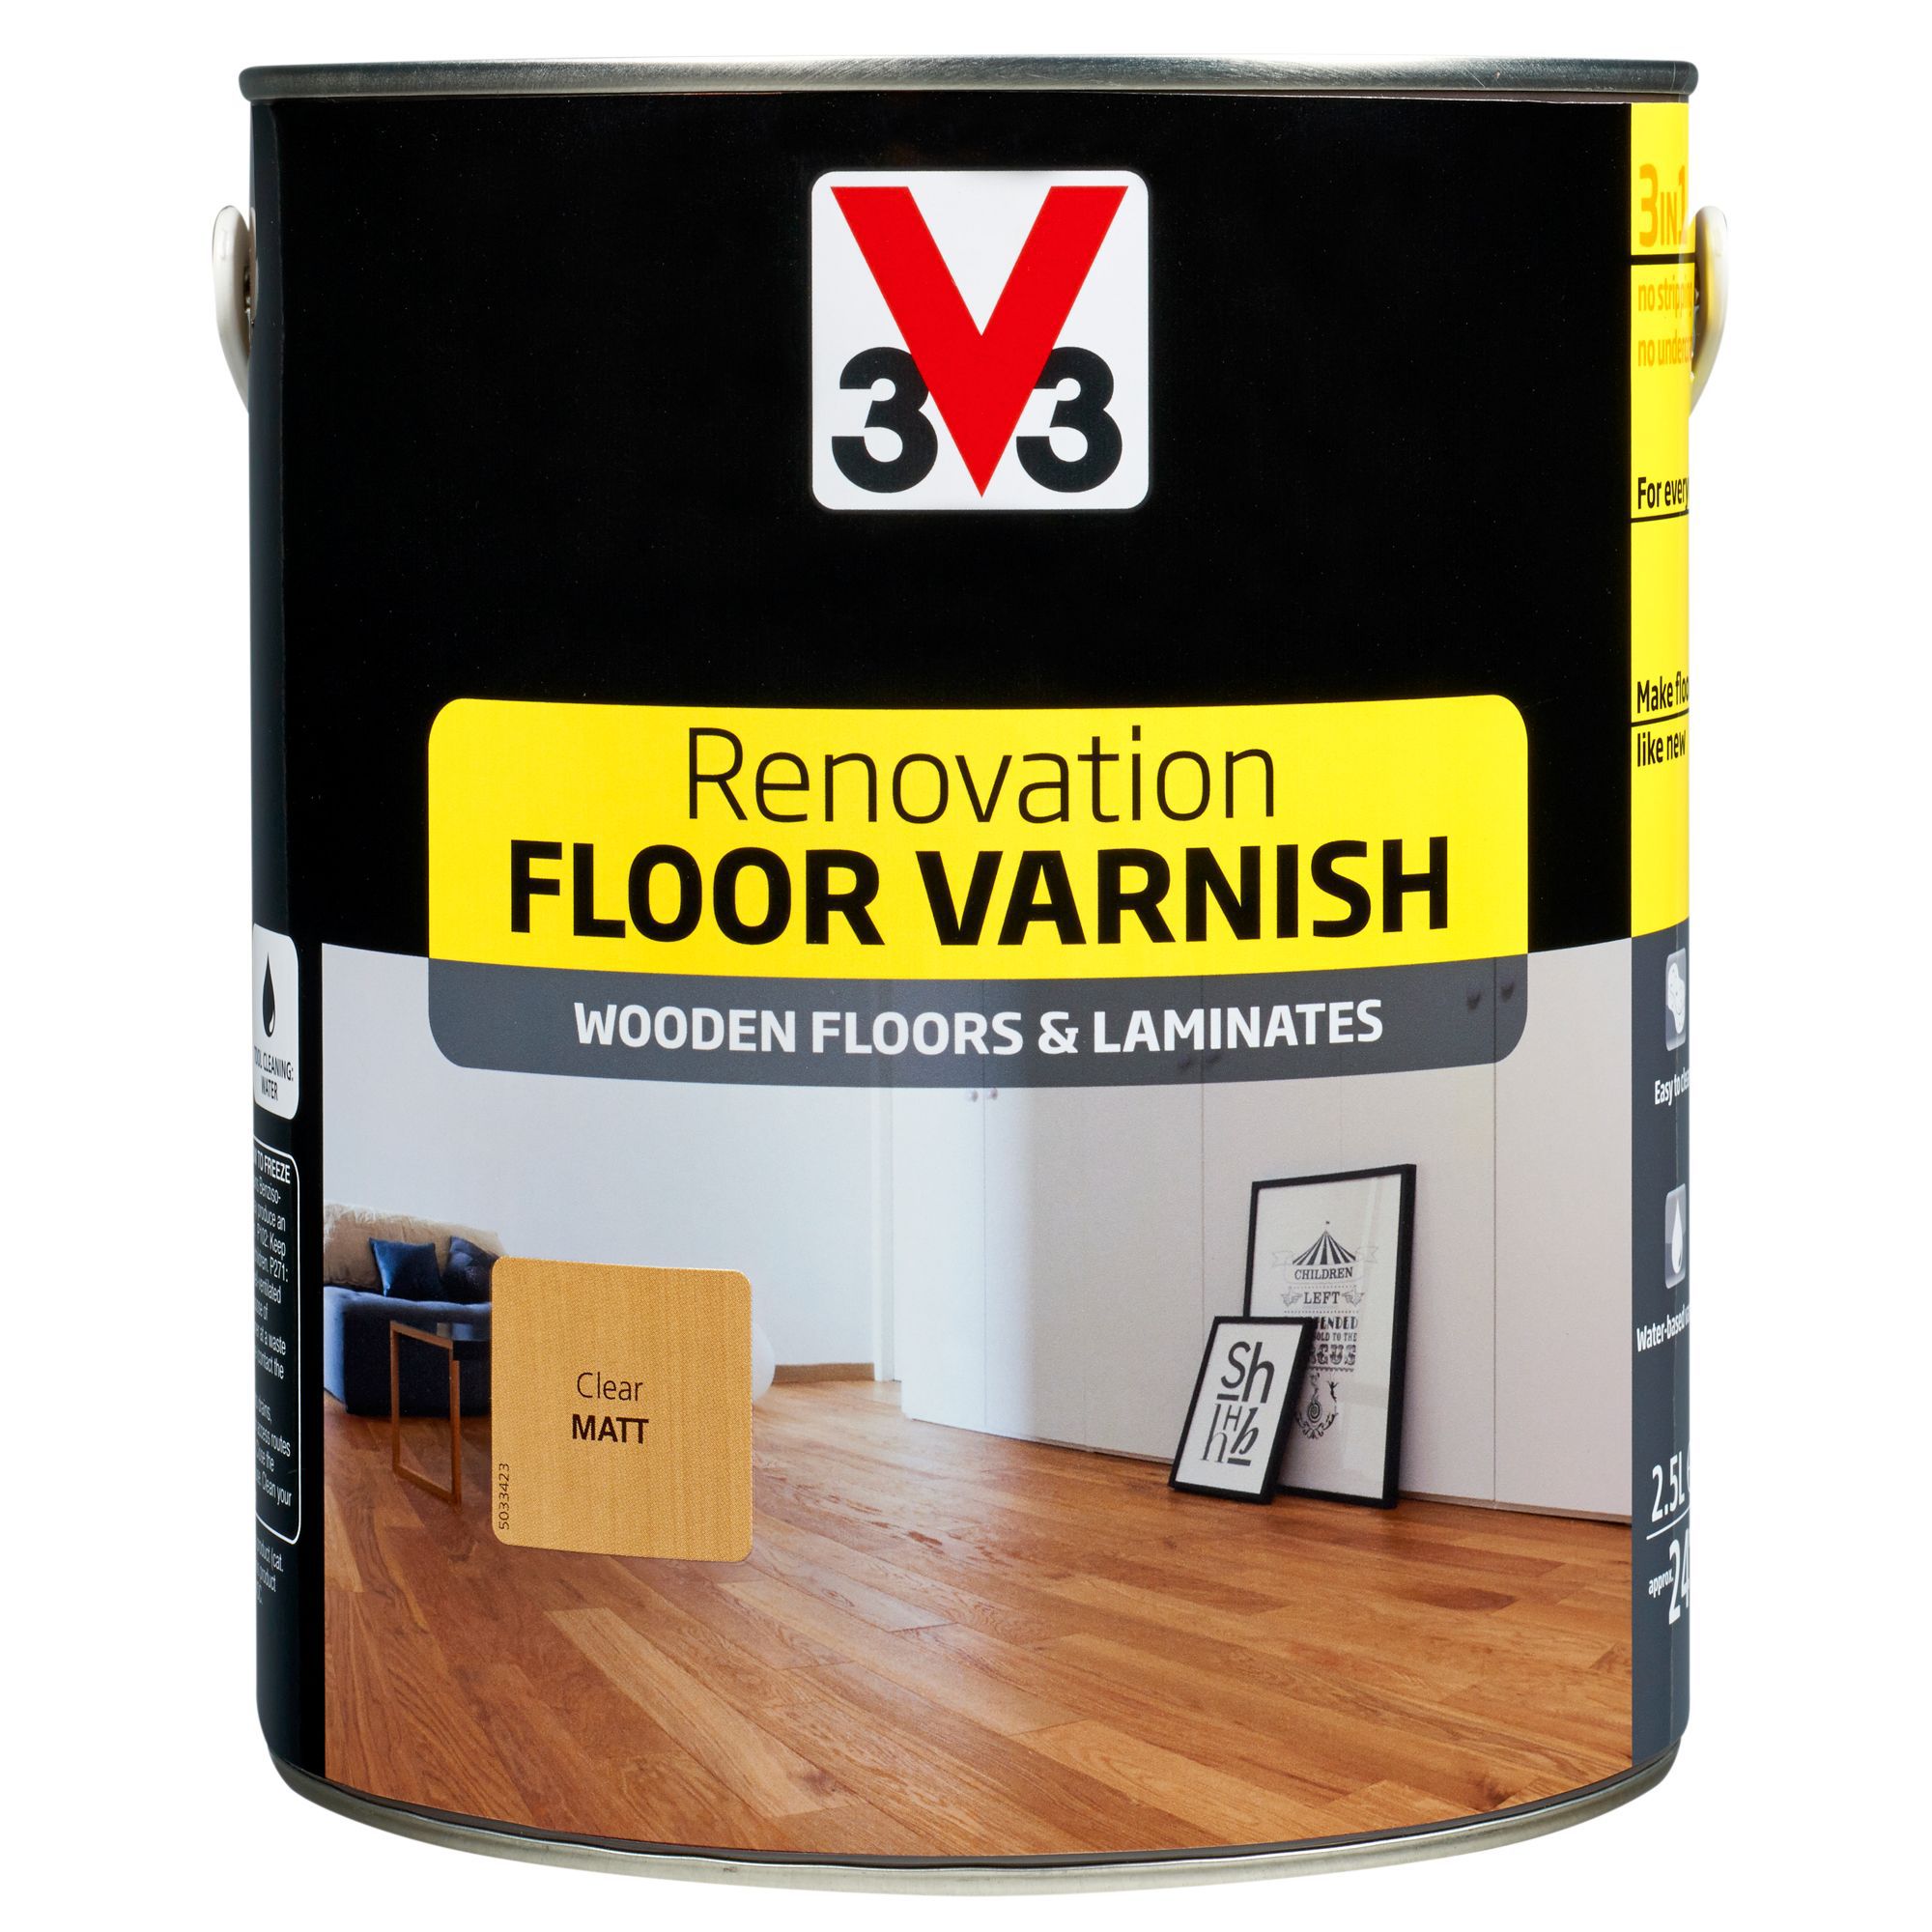 V33 Renovation Clear Matt Floor Varnish 2 5l Departments Diy At